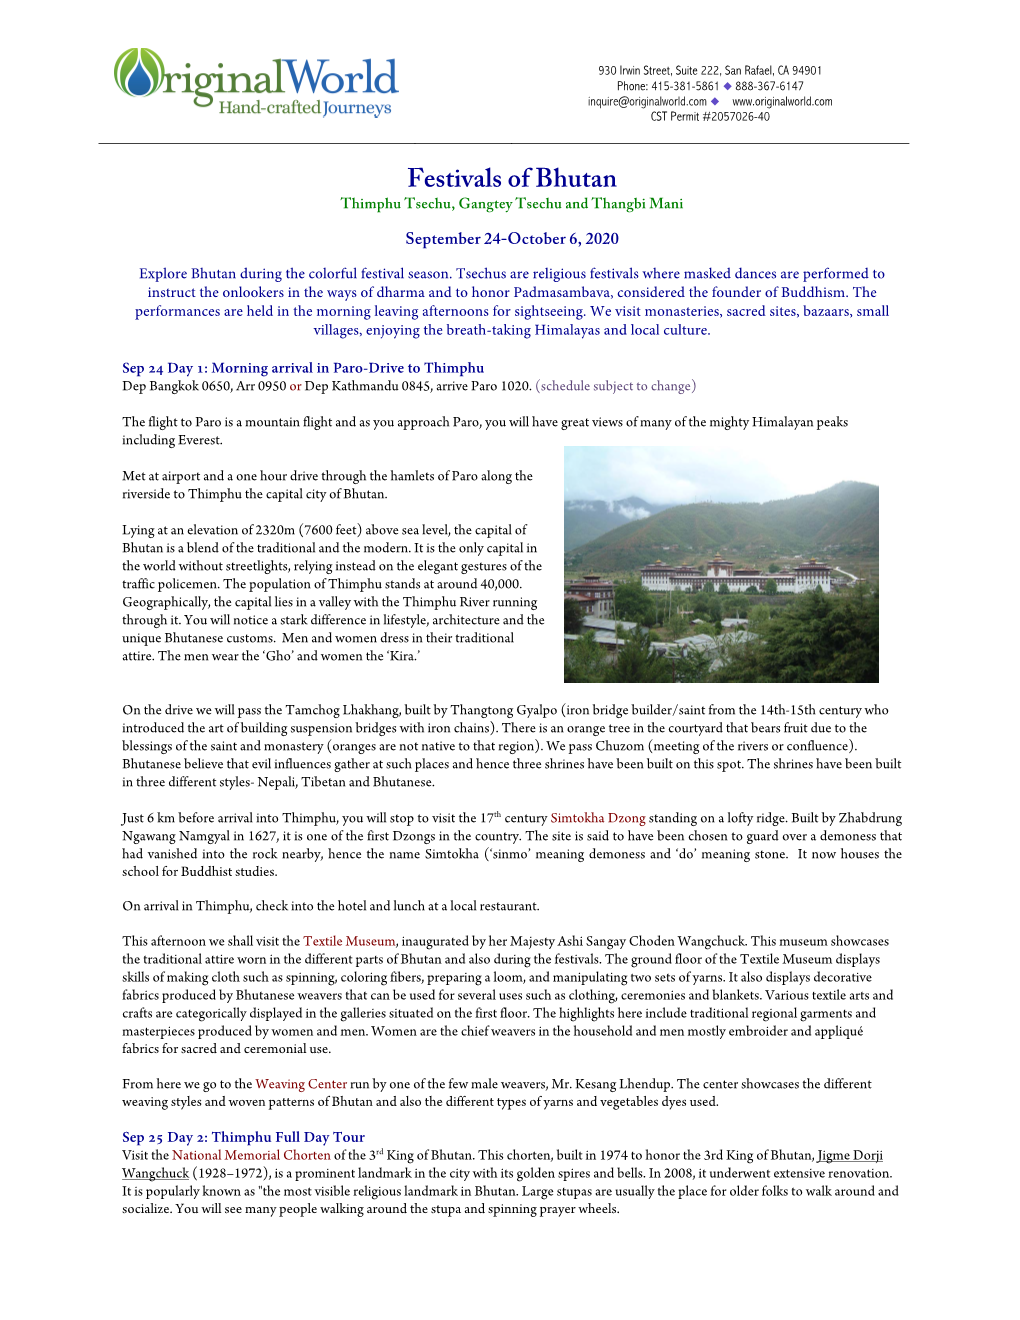 Festivals of Bhutan Thimphu Tsechu, Gangtey Tsechu and Thangbi Mani